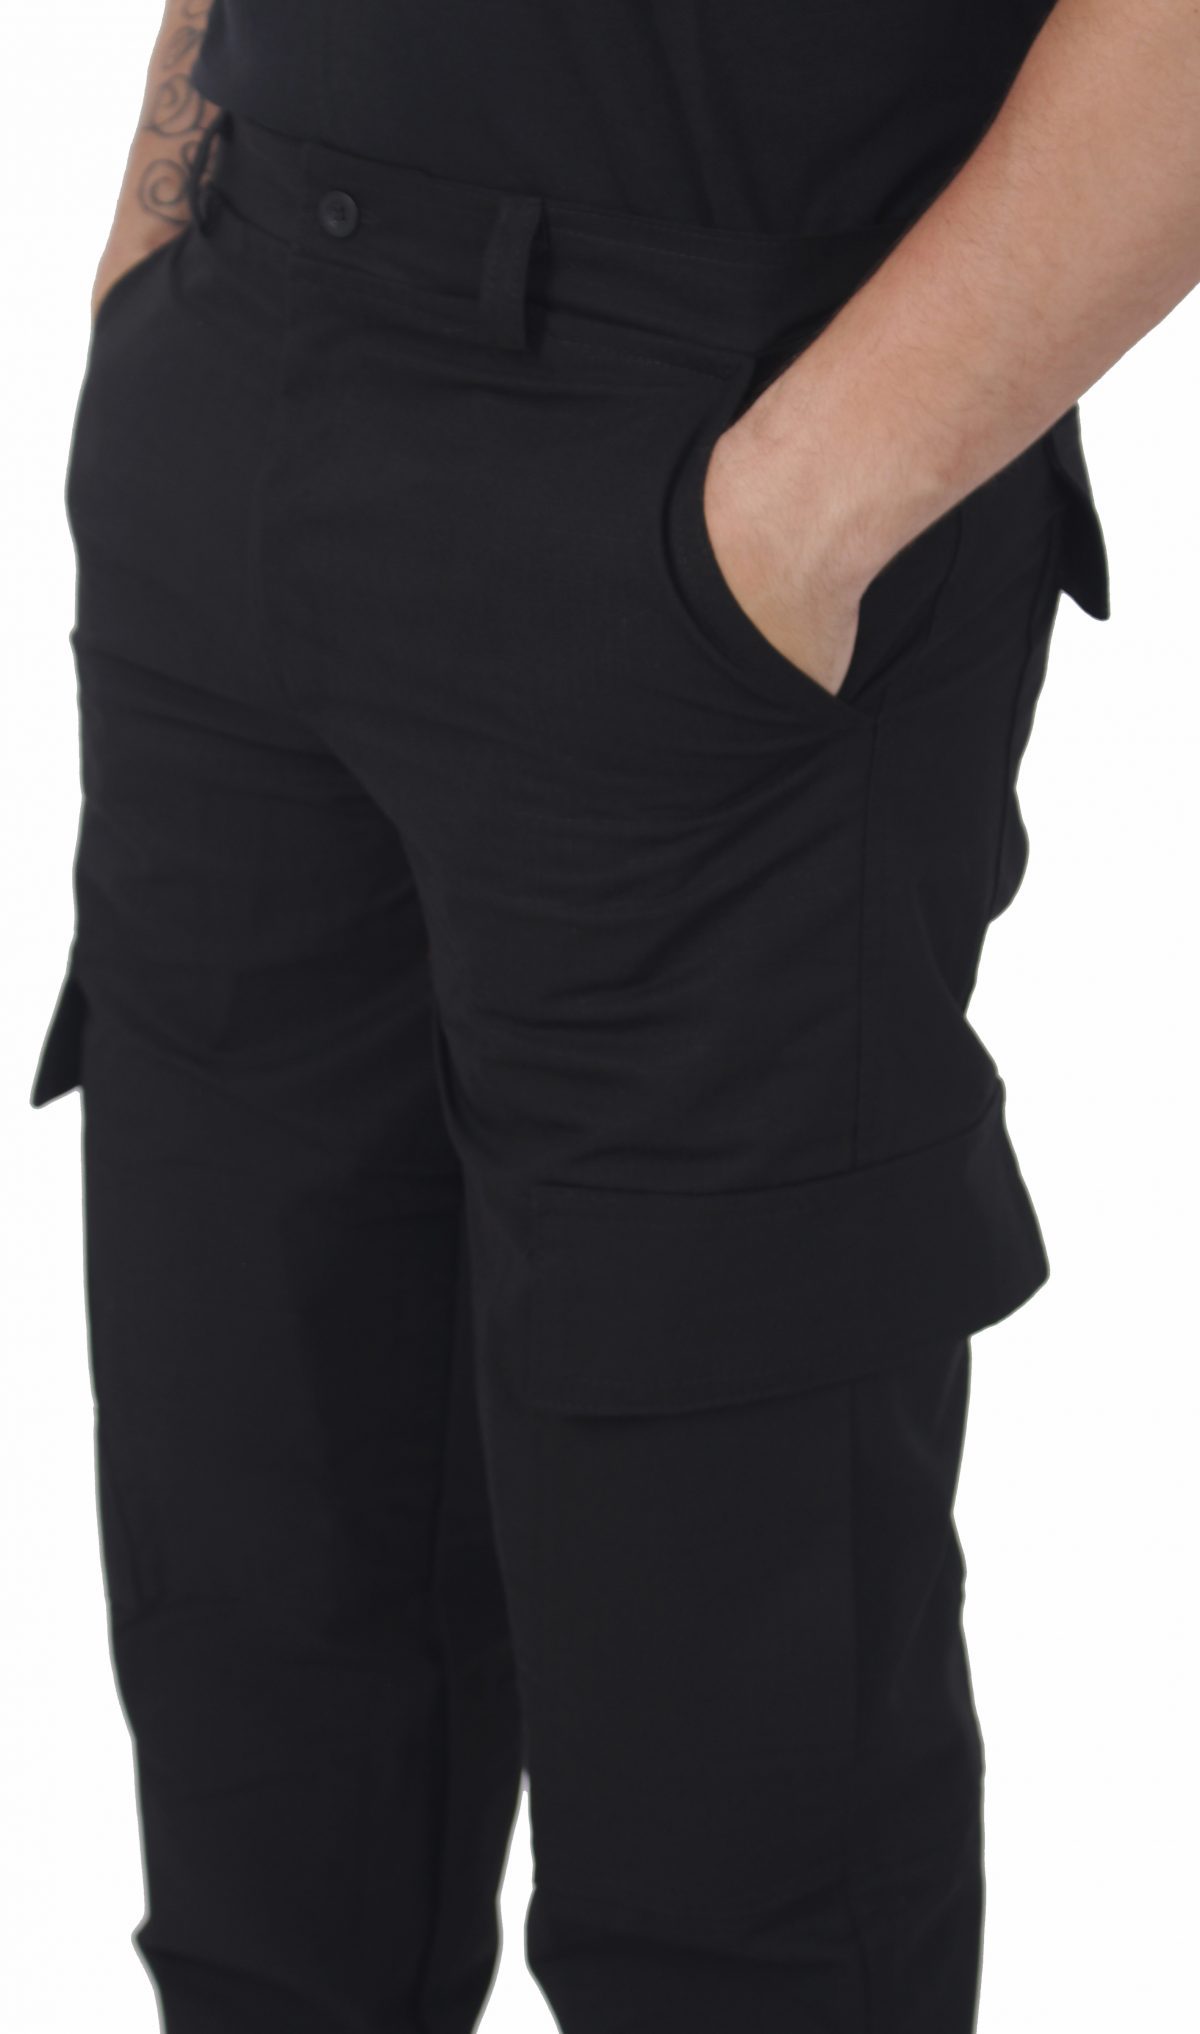 calca tatica preta 2 1 scaled - Couro Art Bombeiro Civil, Saúde e Tático